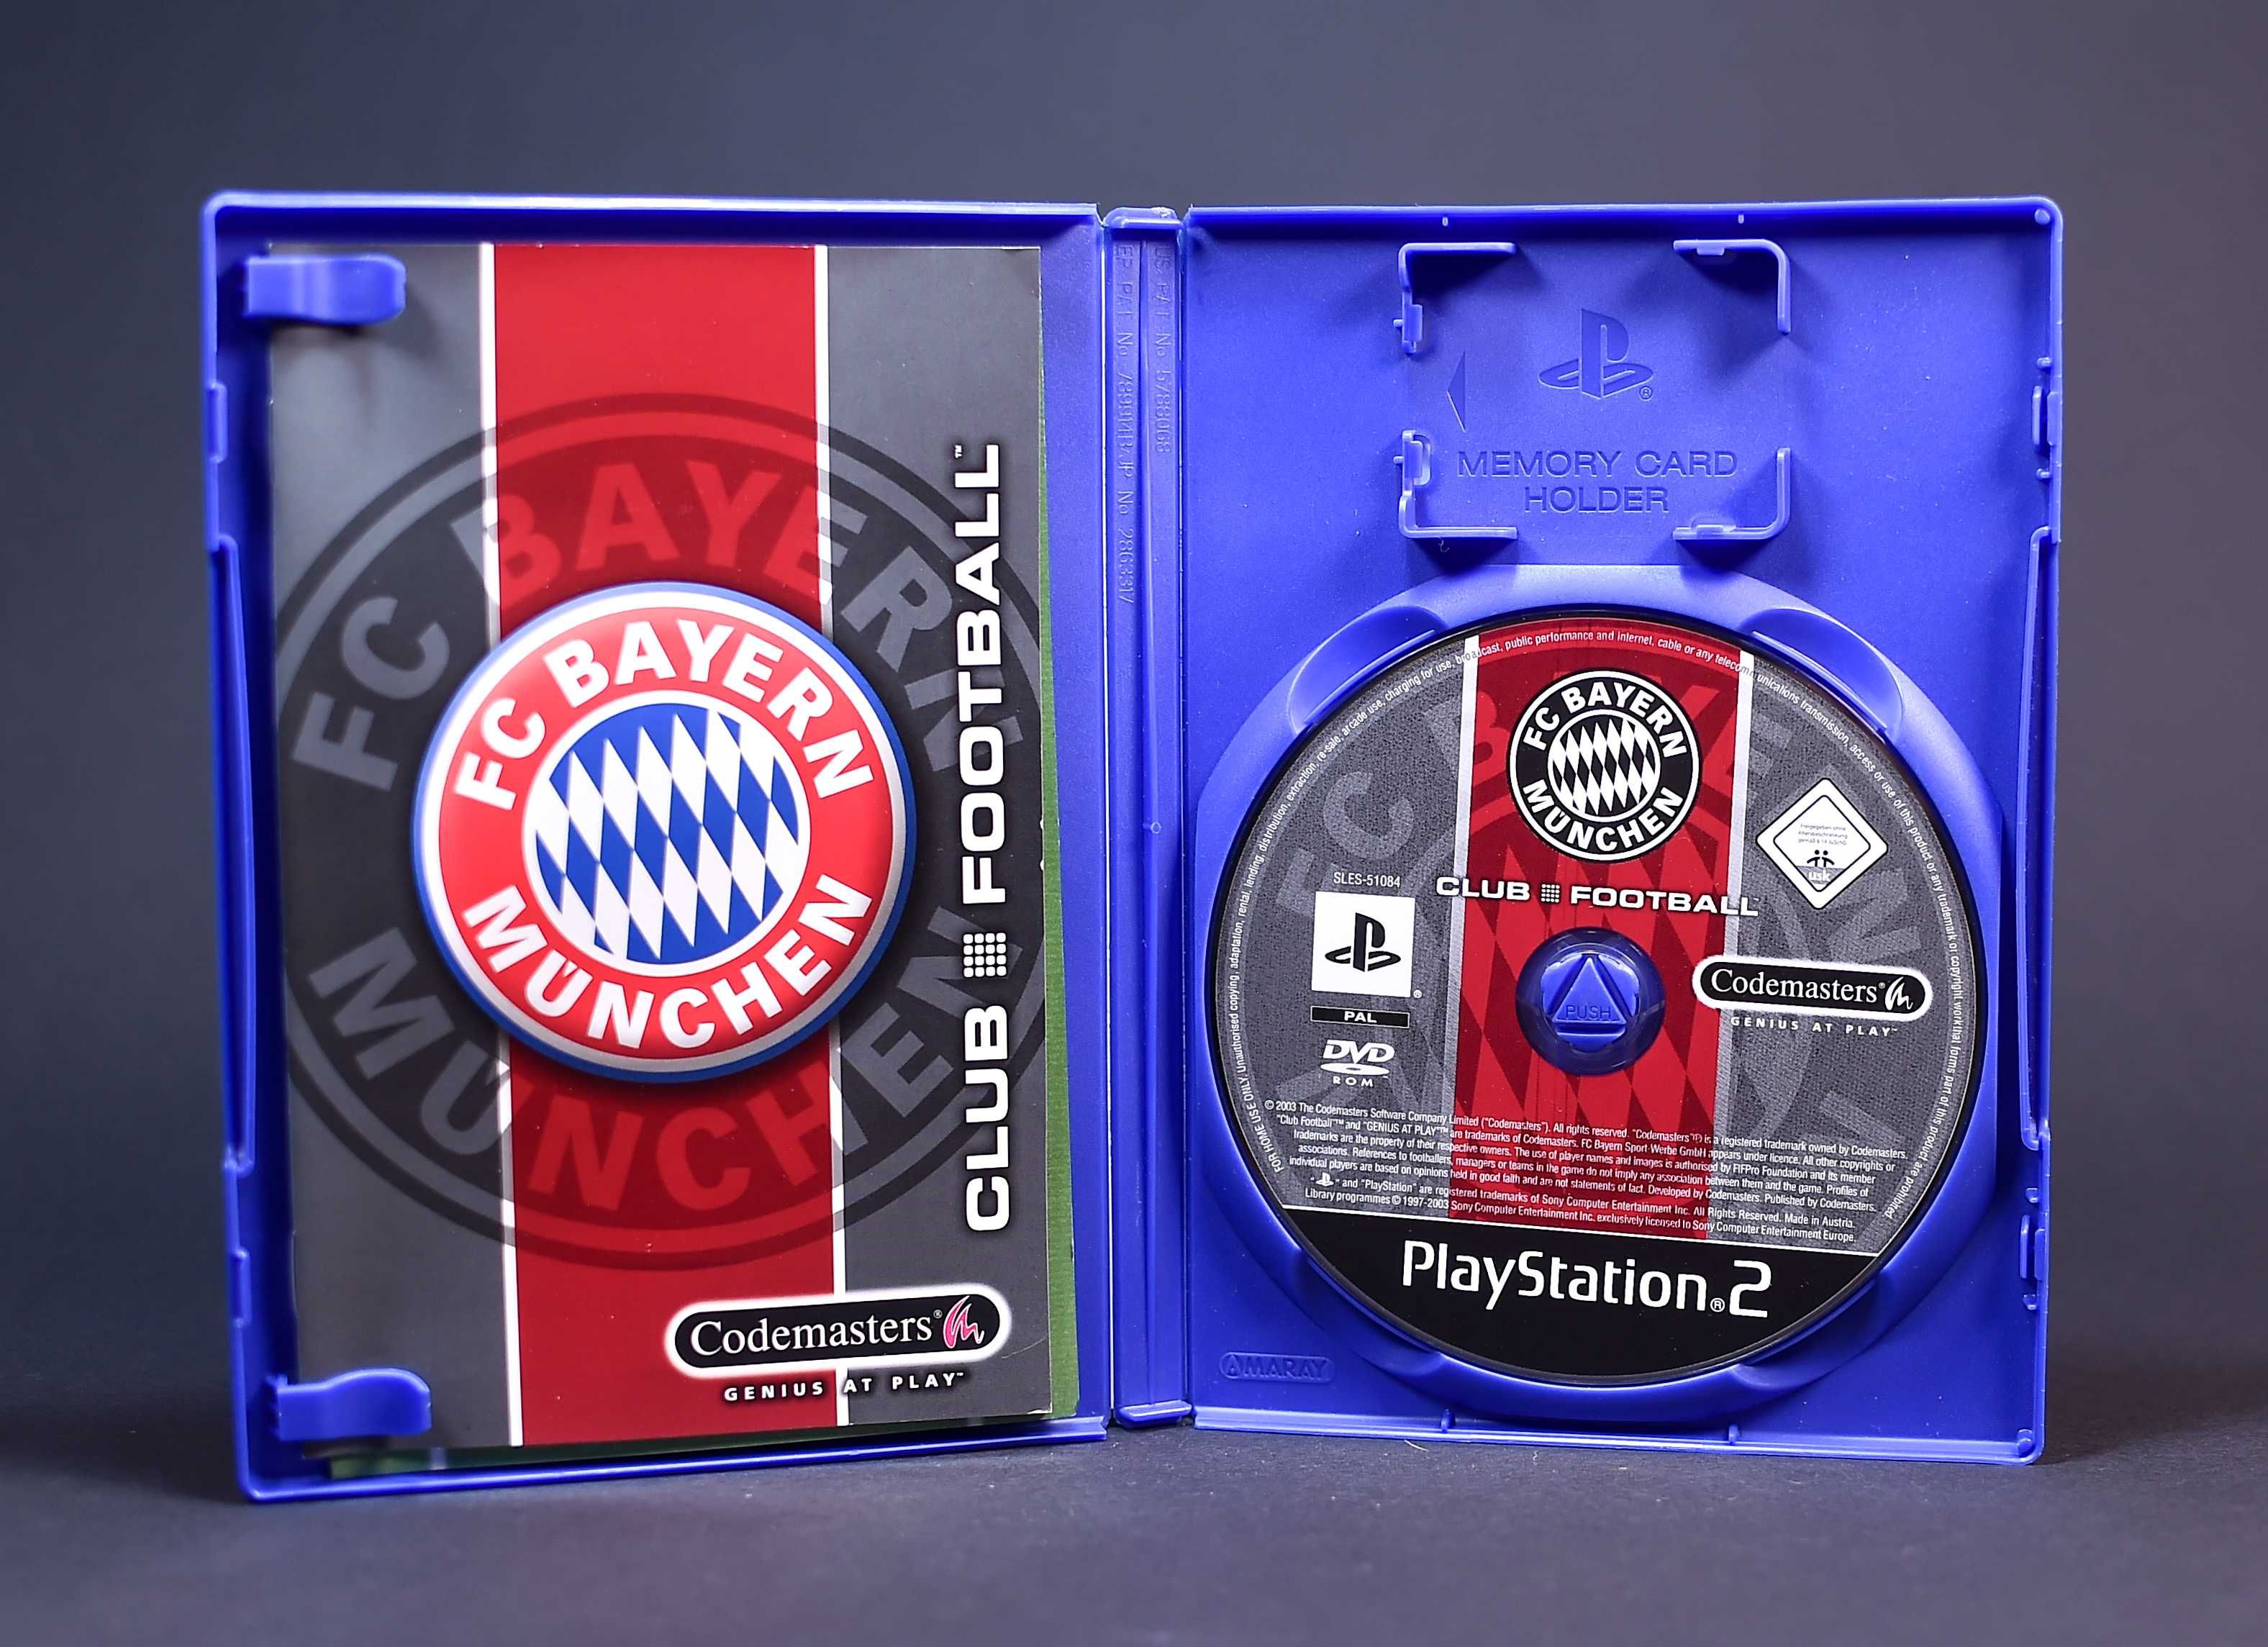 PS2 # FC Bayern Munchen Club Football